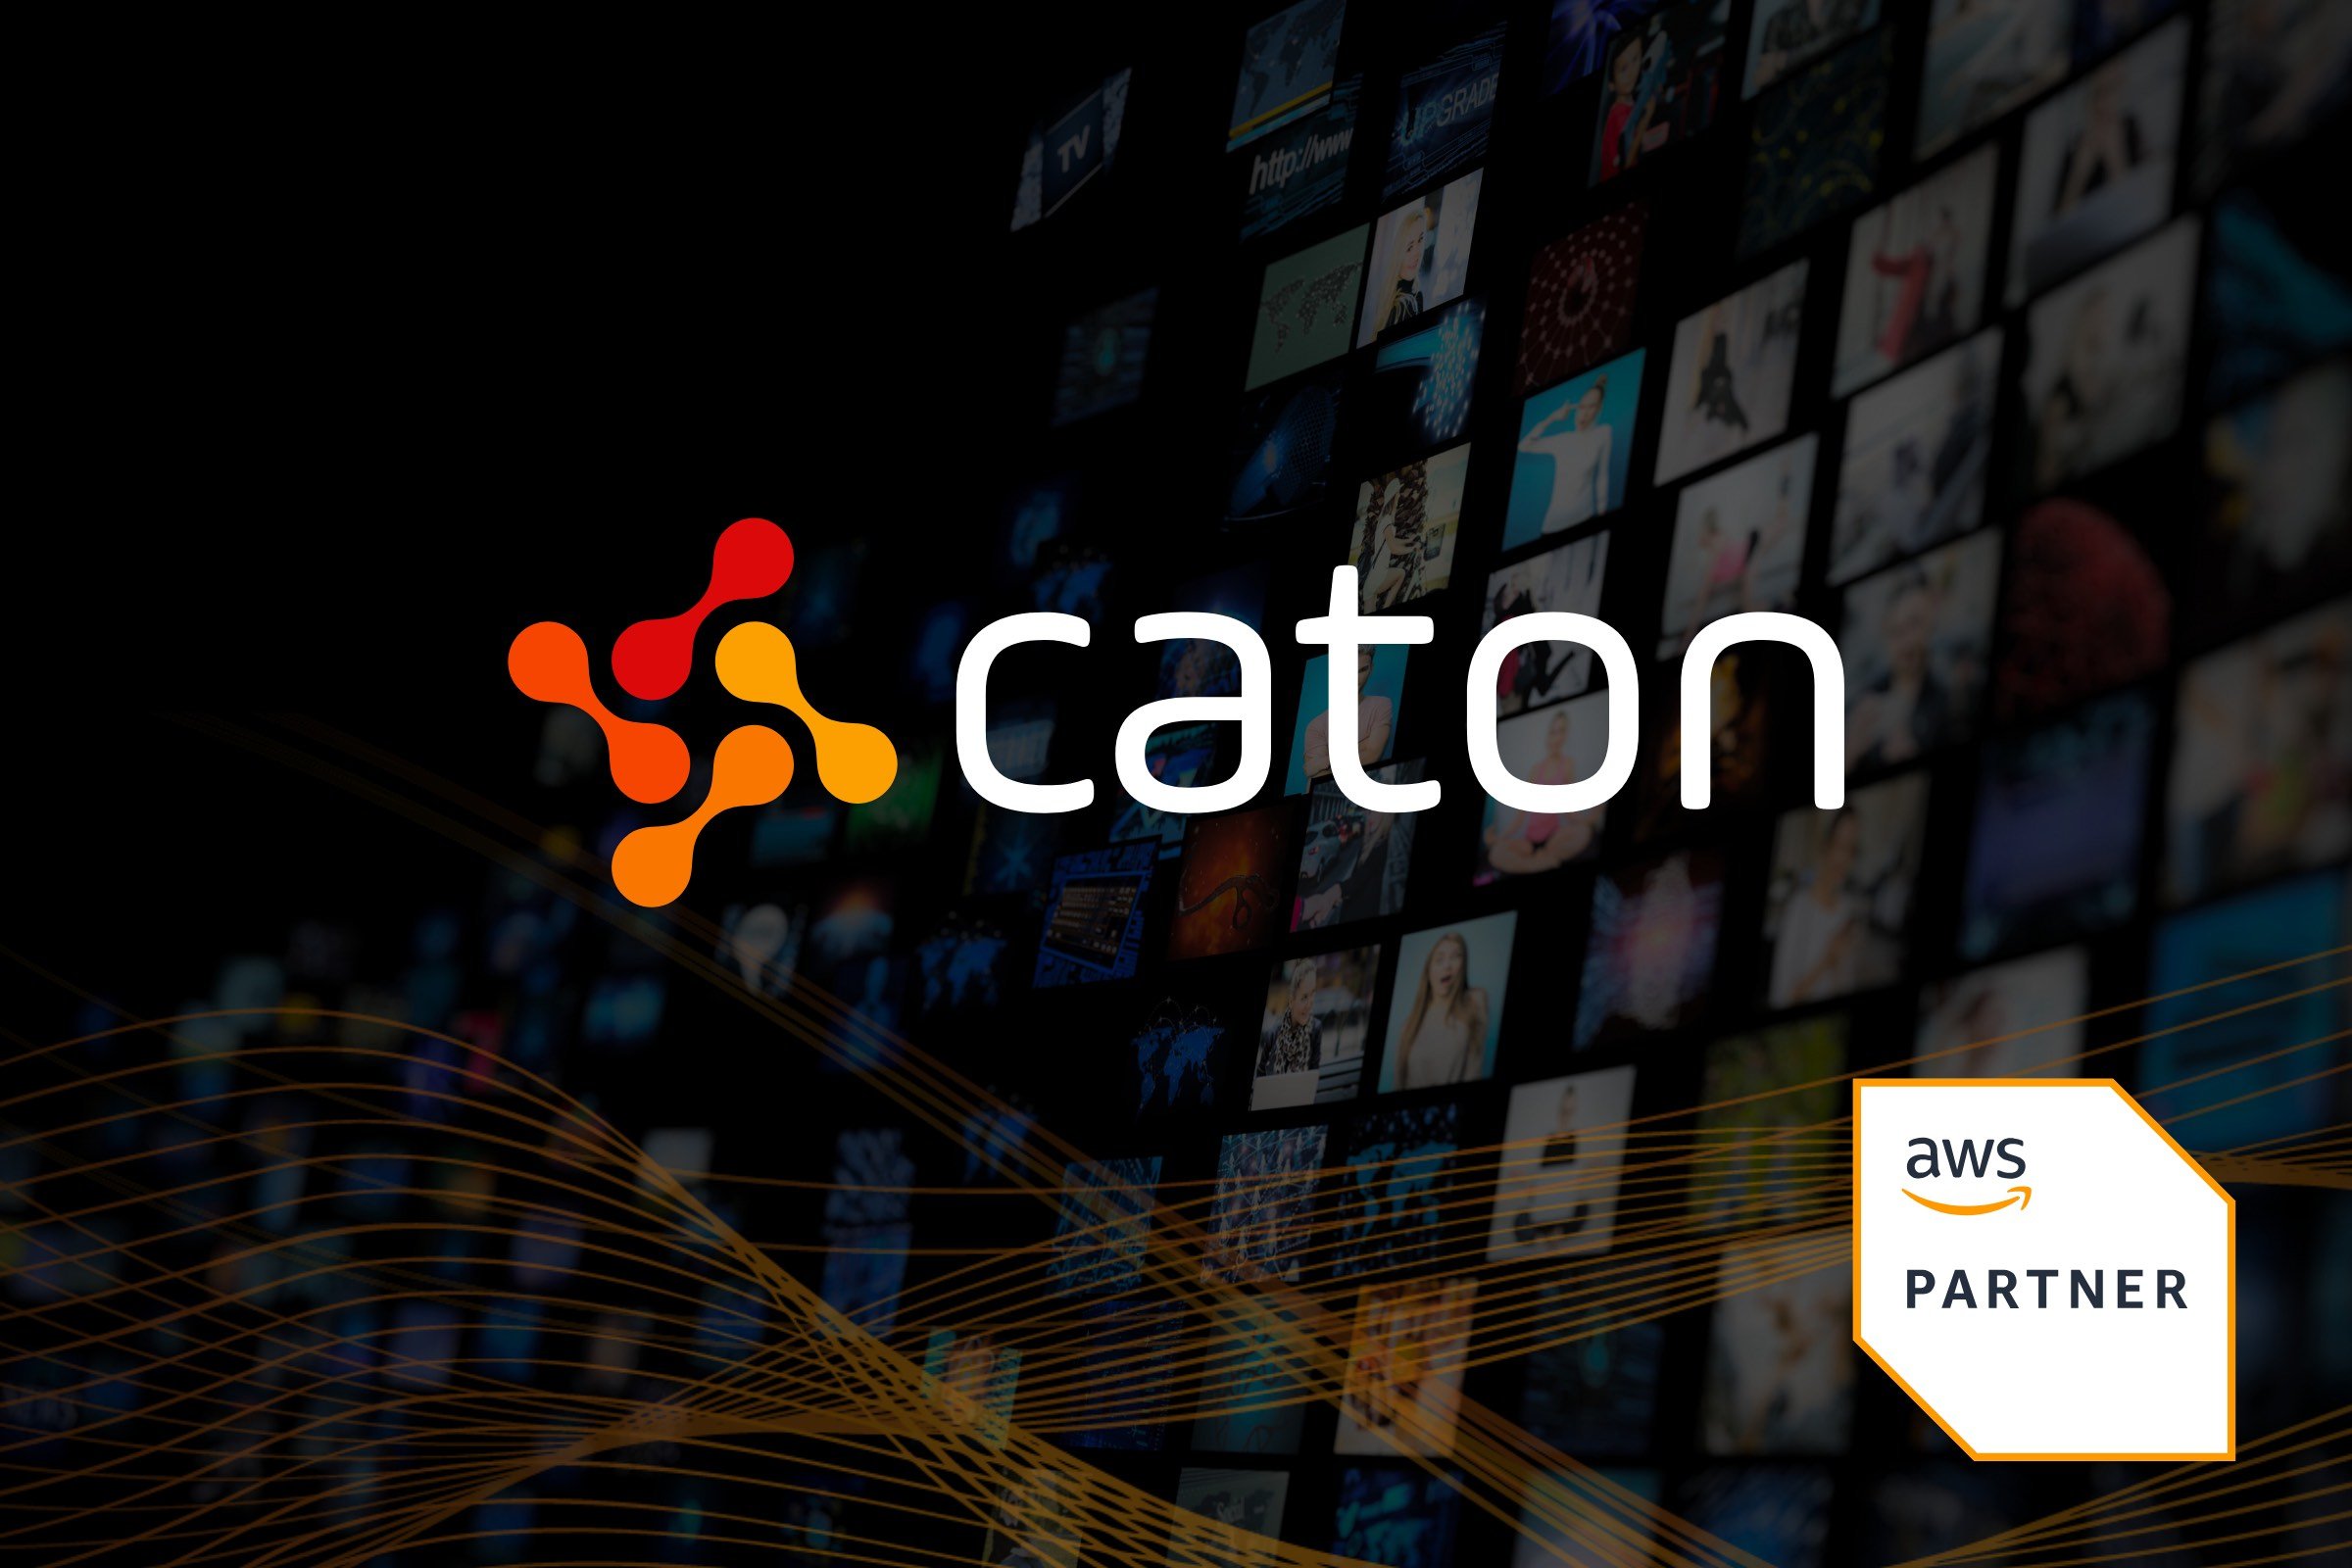 Caton + AWS Partner (Partner-led) - 3